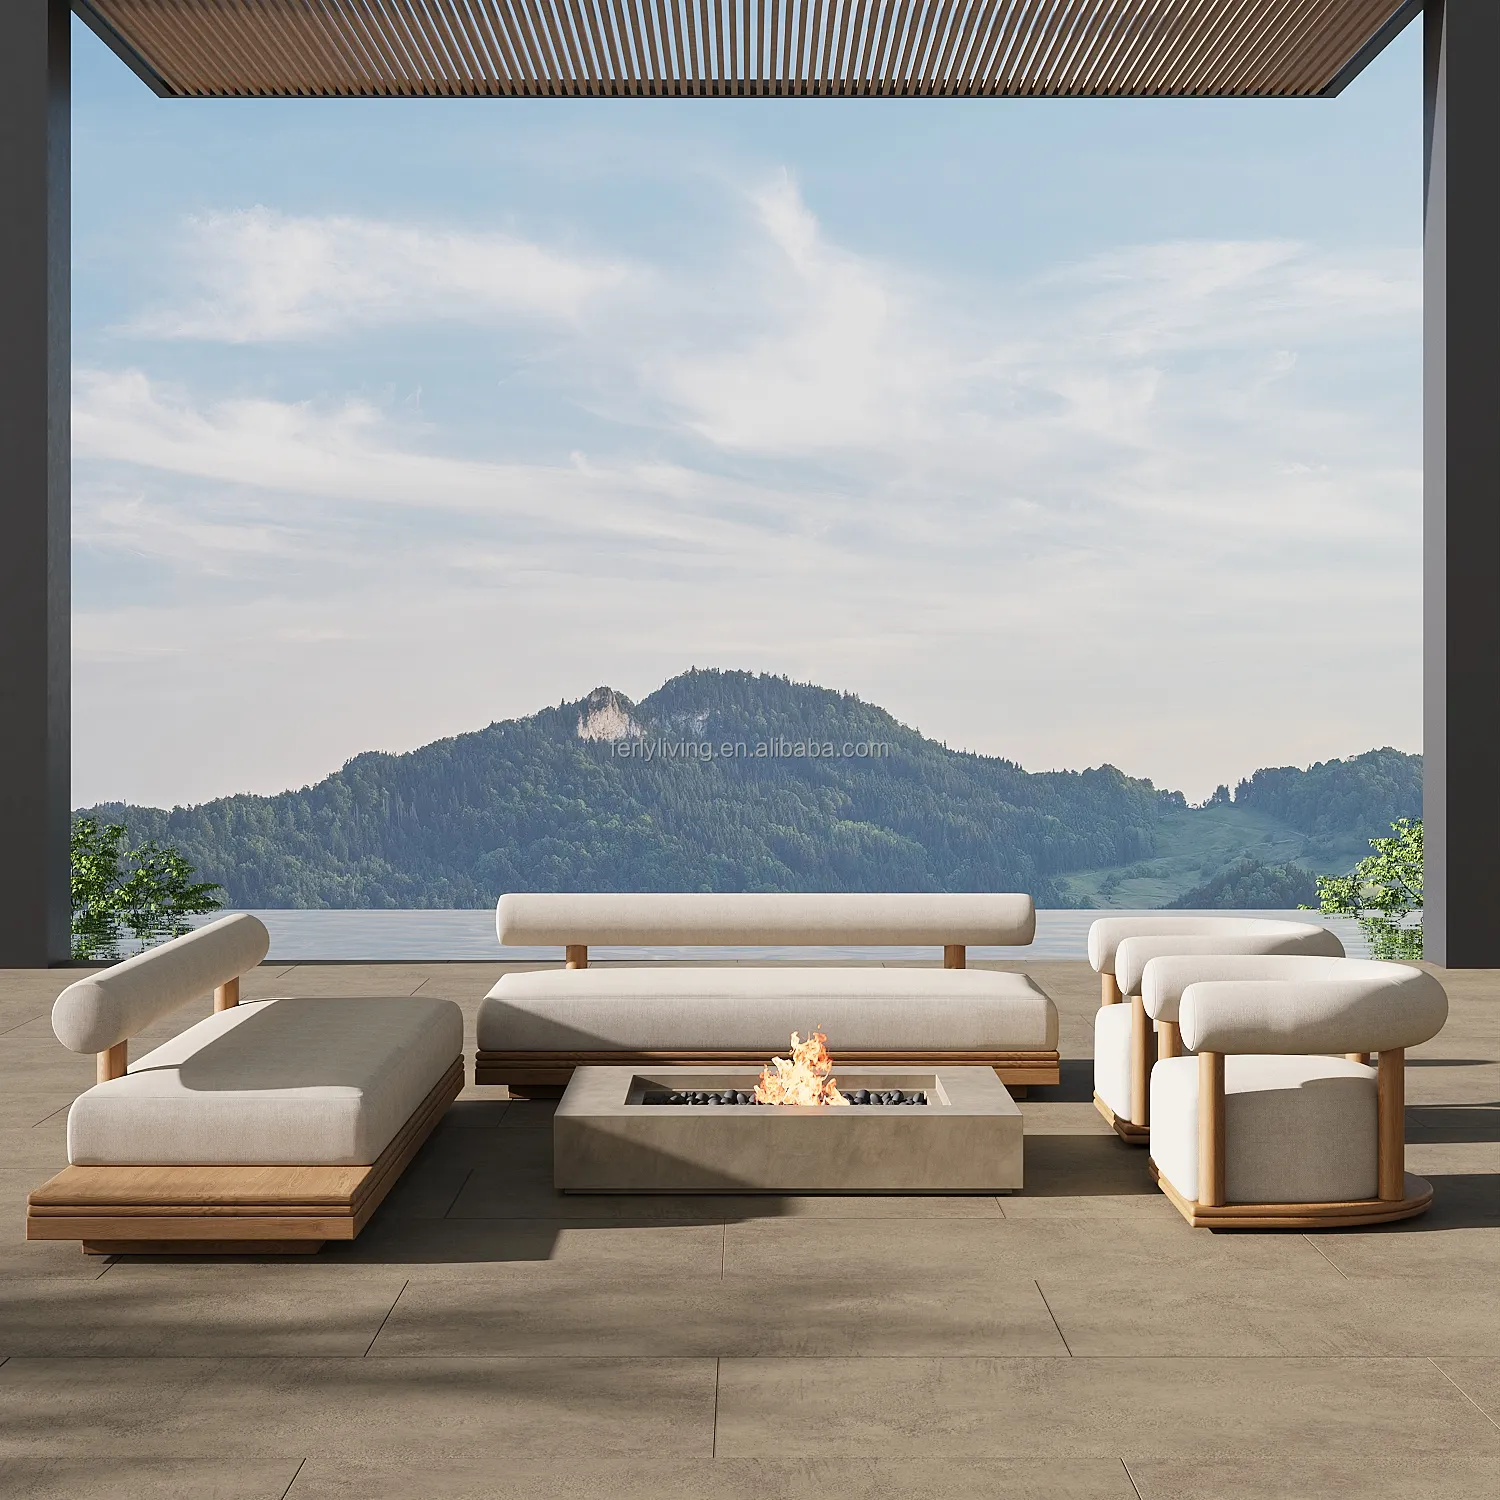 Felly personalizzazione moderna Teak mobili da esterno Patio Design di lusso divano esterno Set divano da giardino